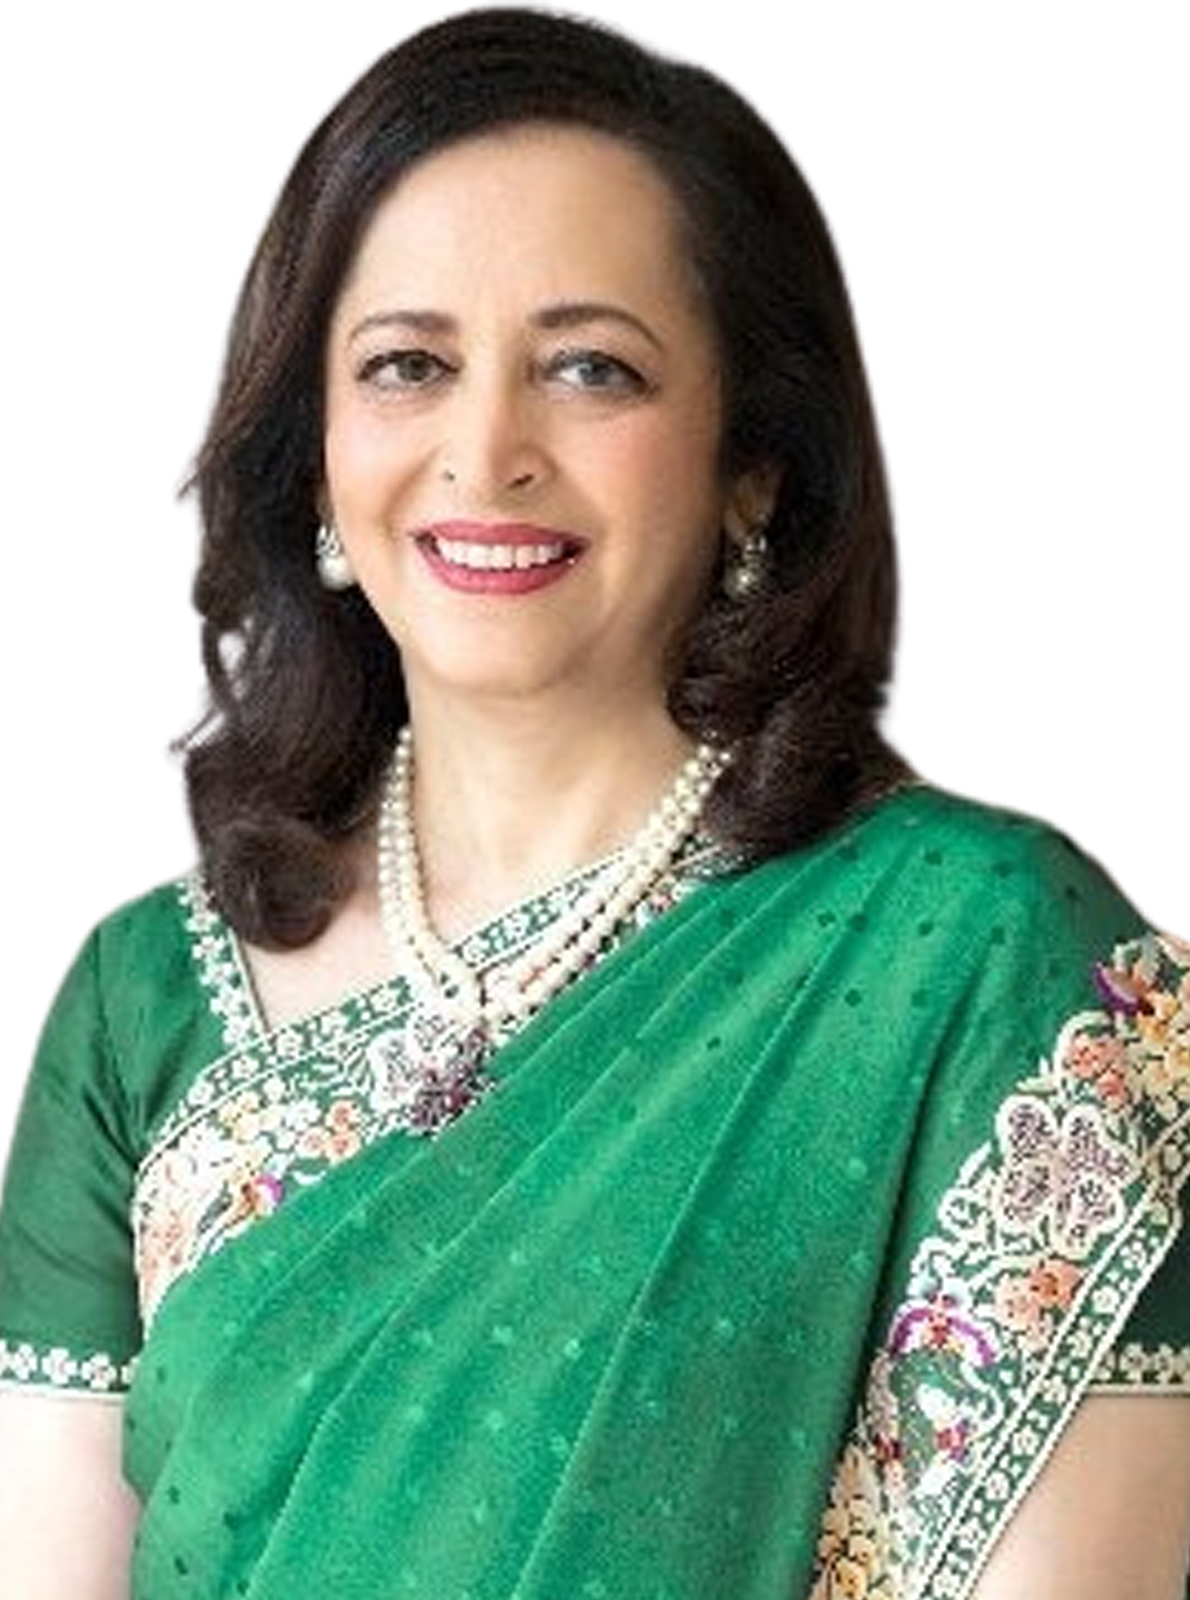 Dr. Swati Piramal